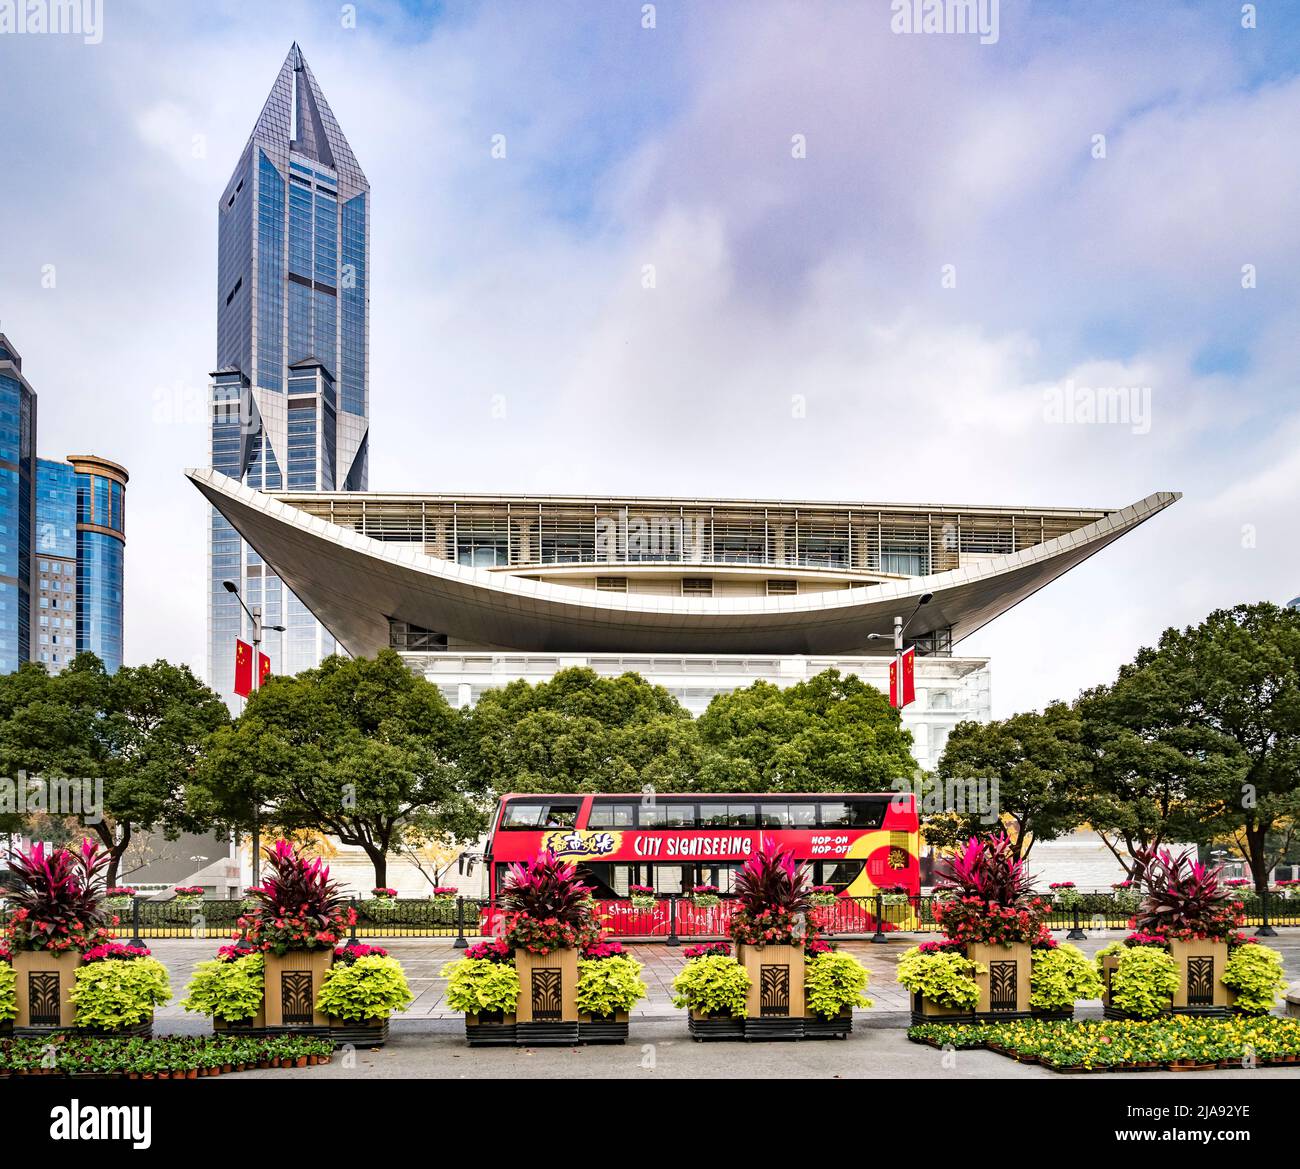 2 dicembre 2018: Shanghai, Cina - il Centro Espositivo di Shanghai Urban Planning da Piazza del Popolo, con un autobus turistico di fronte. Foto Stock